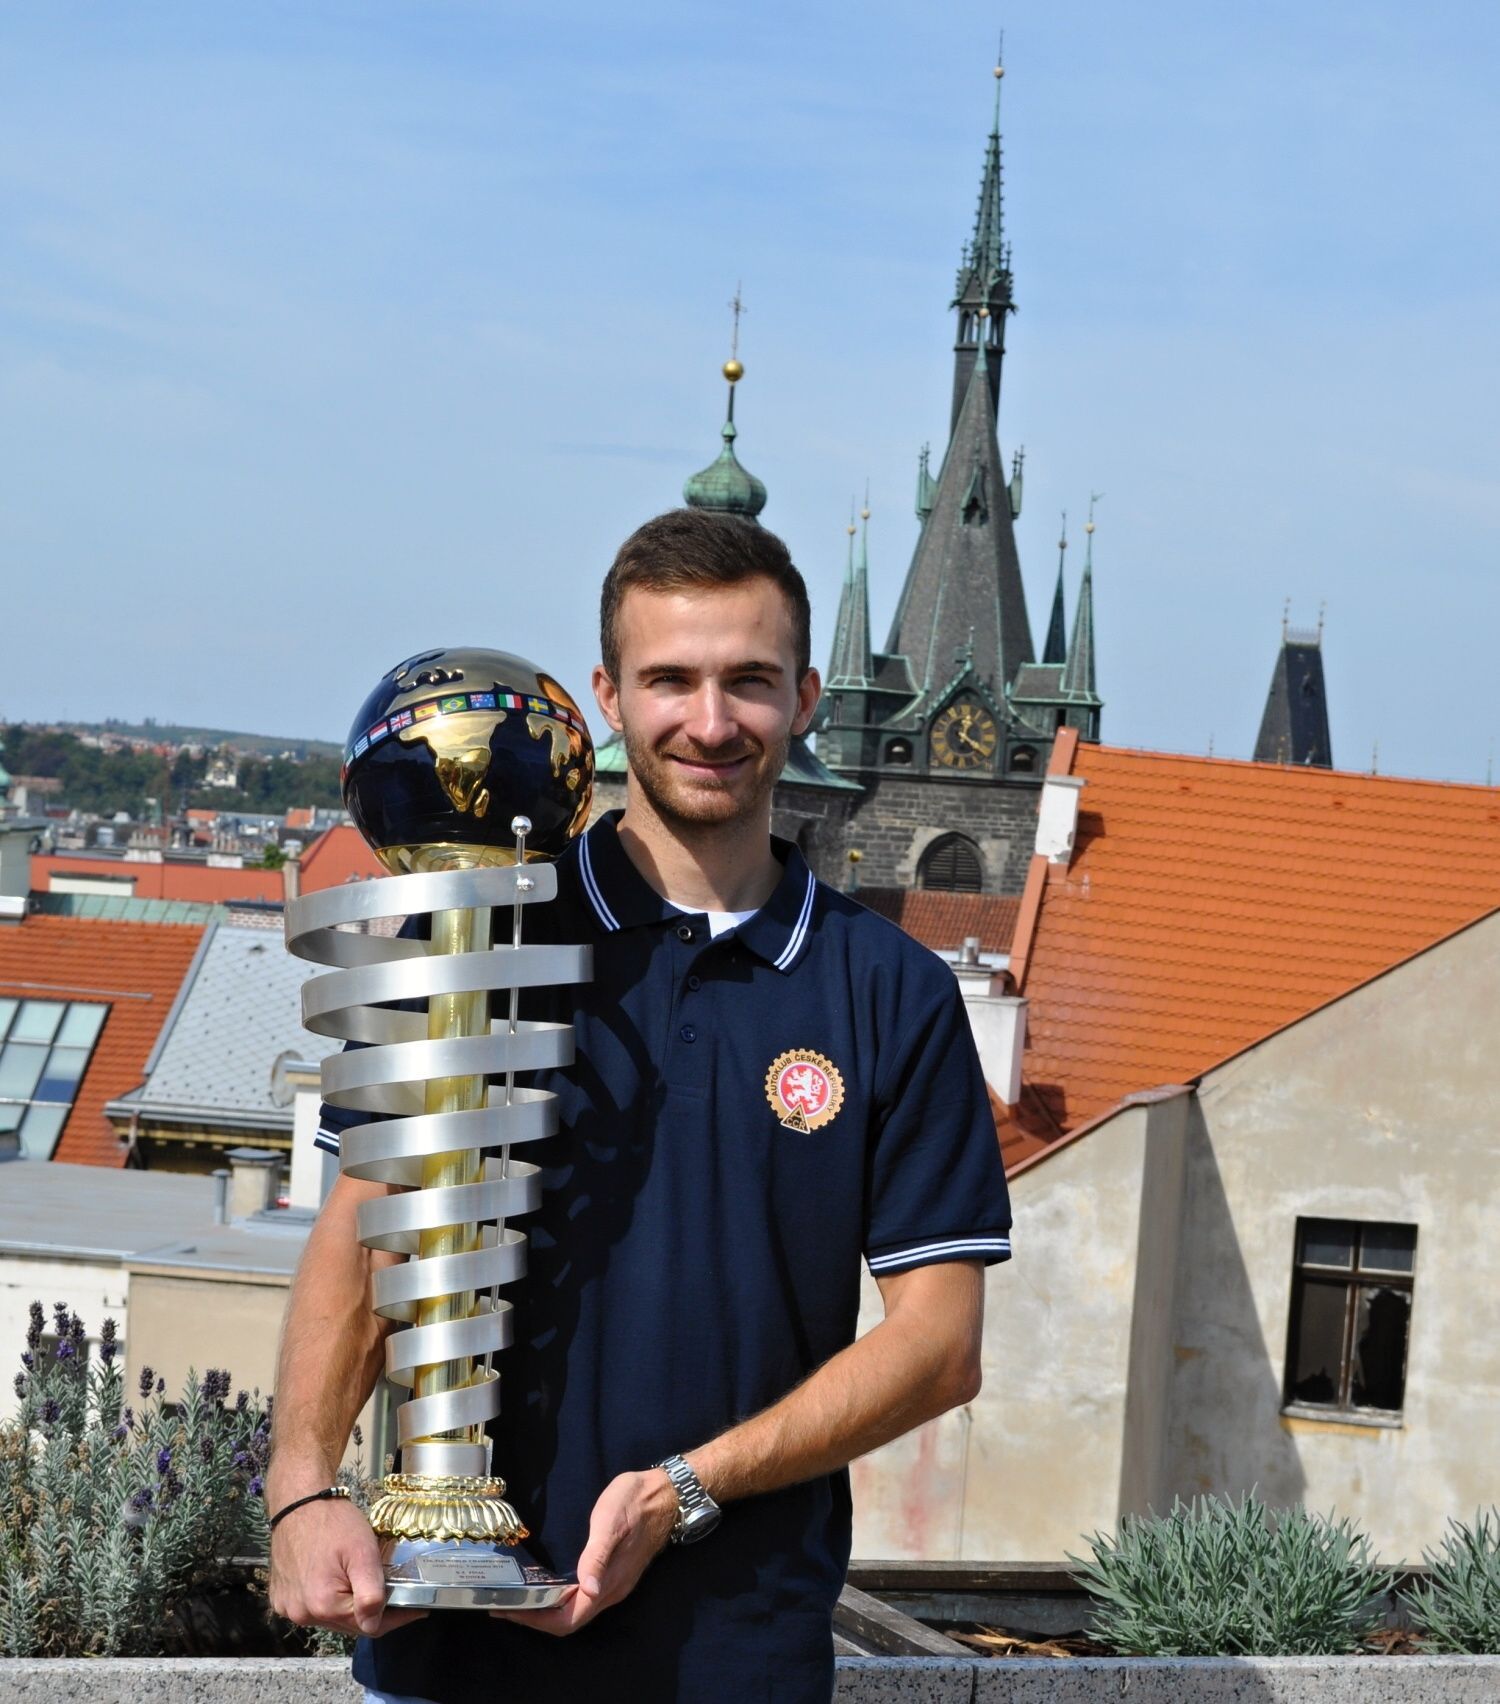 Motokárista Patrik Hájek s trofejí pro mistra světa elitní kategorie KZ1